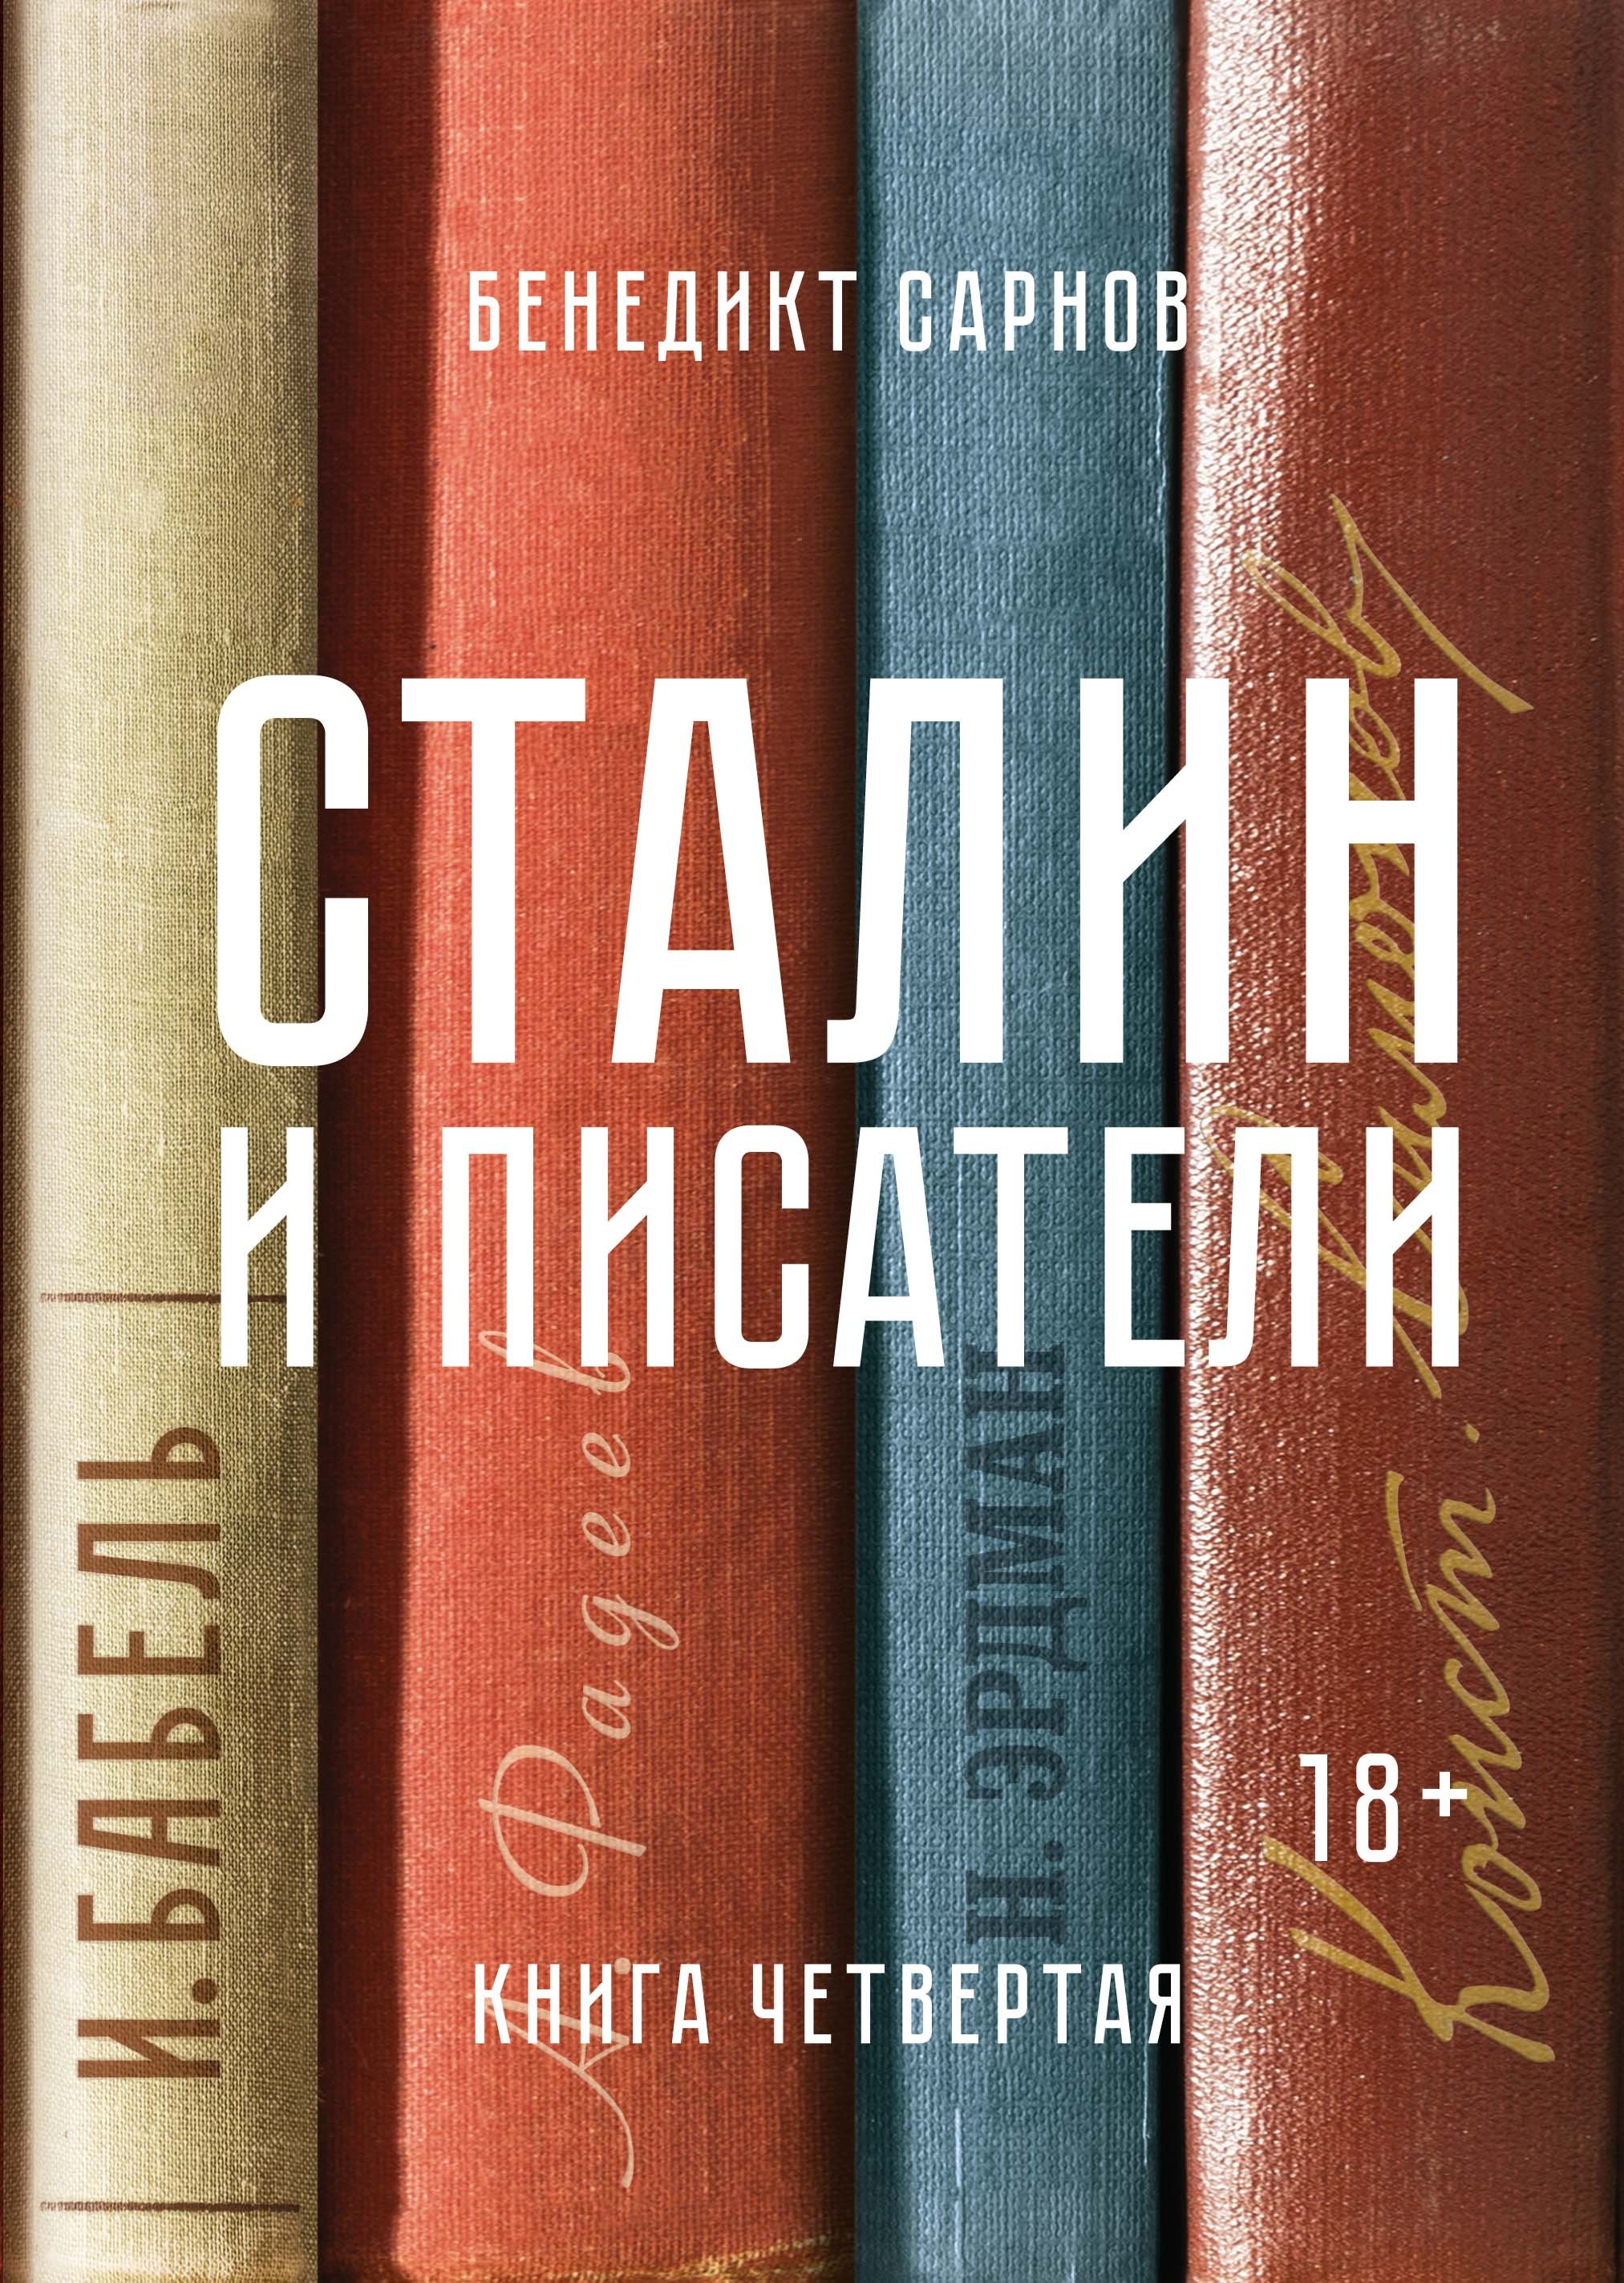 Сталин и писатели. Книга четвертая. Сарнов Бенедикт Михайлович